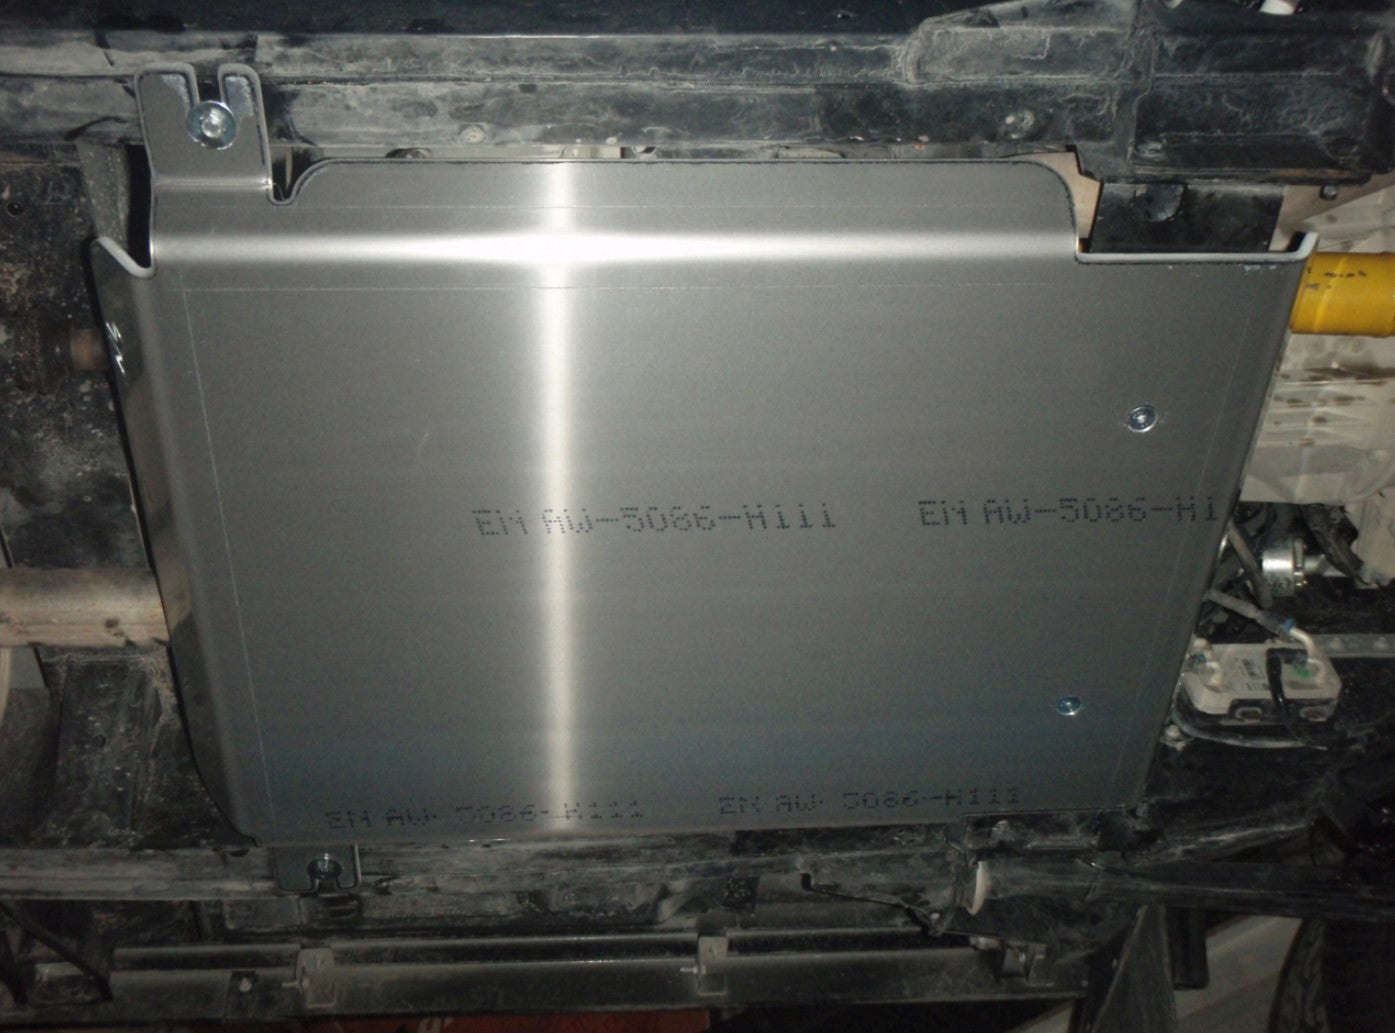 armatura in alluminio fissata alla parte inferiore di un veicolo con scritta